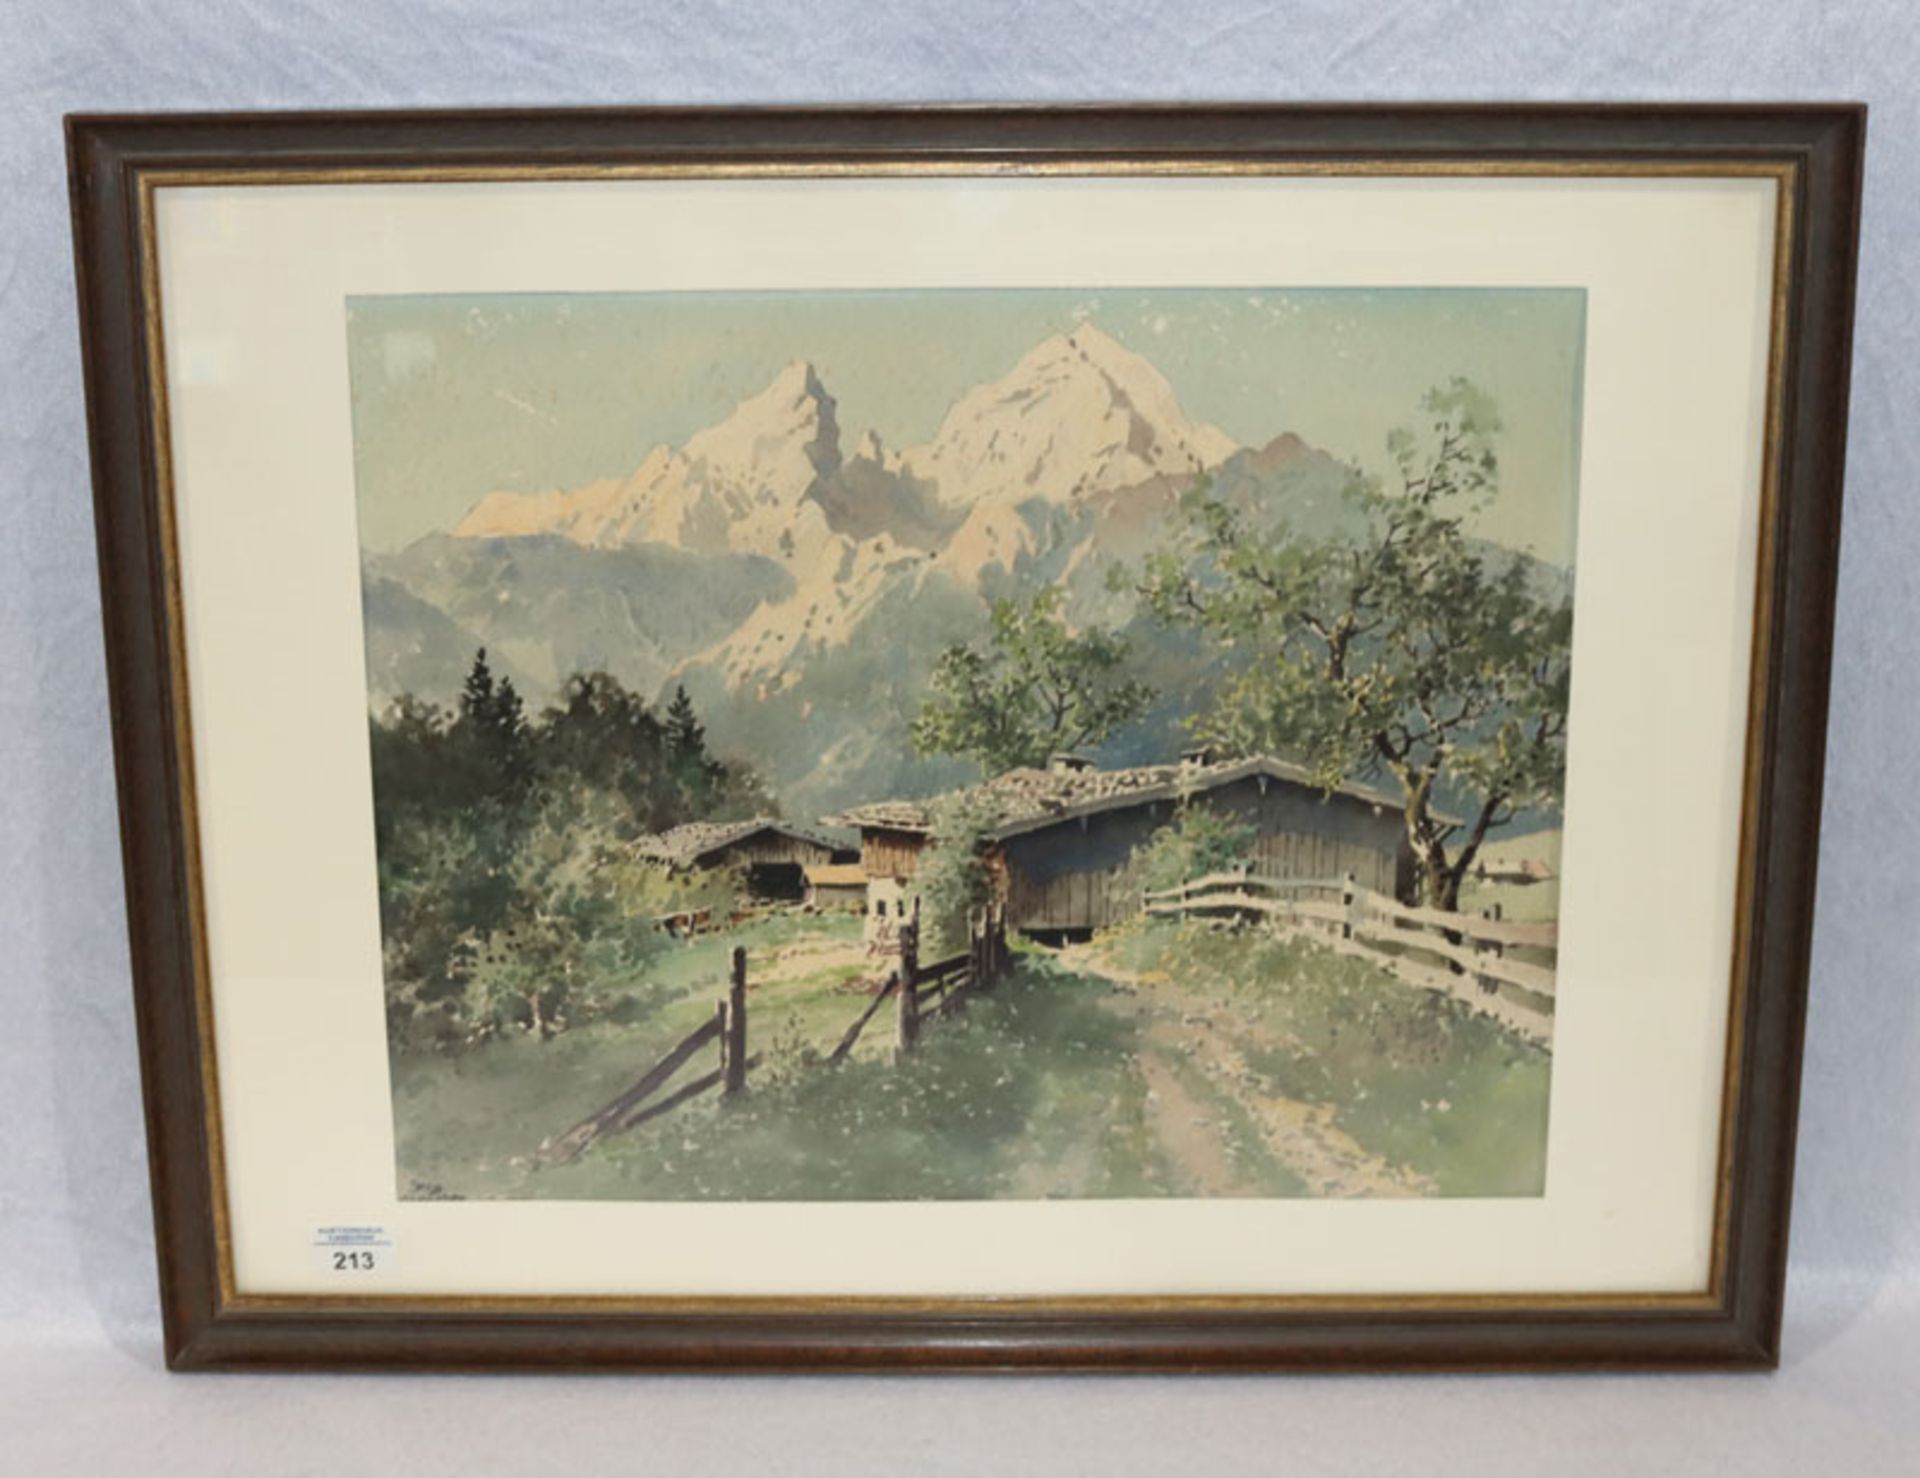 Aquarell 'Bauernhof im Hochgebirge', signiert JOS München für Josef Süssmeier, * 1896 Rohr + 1971